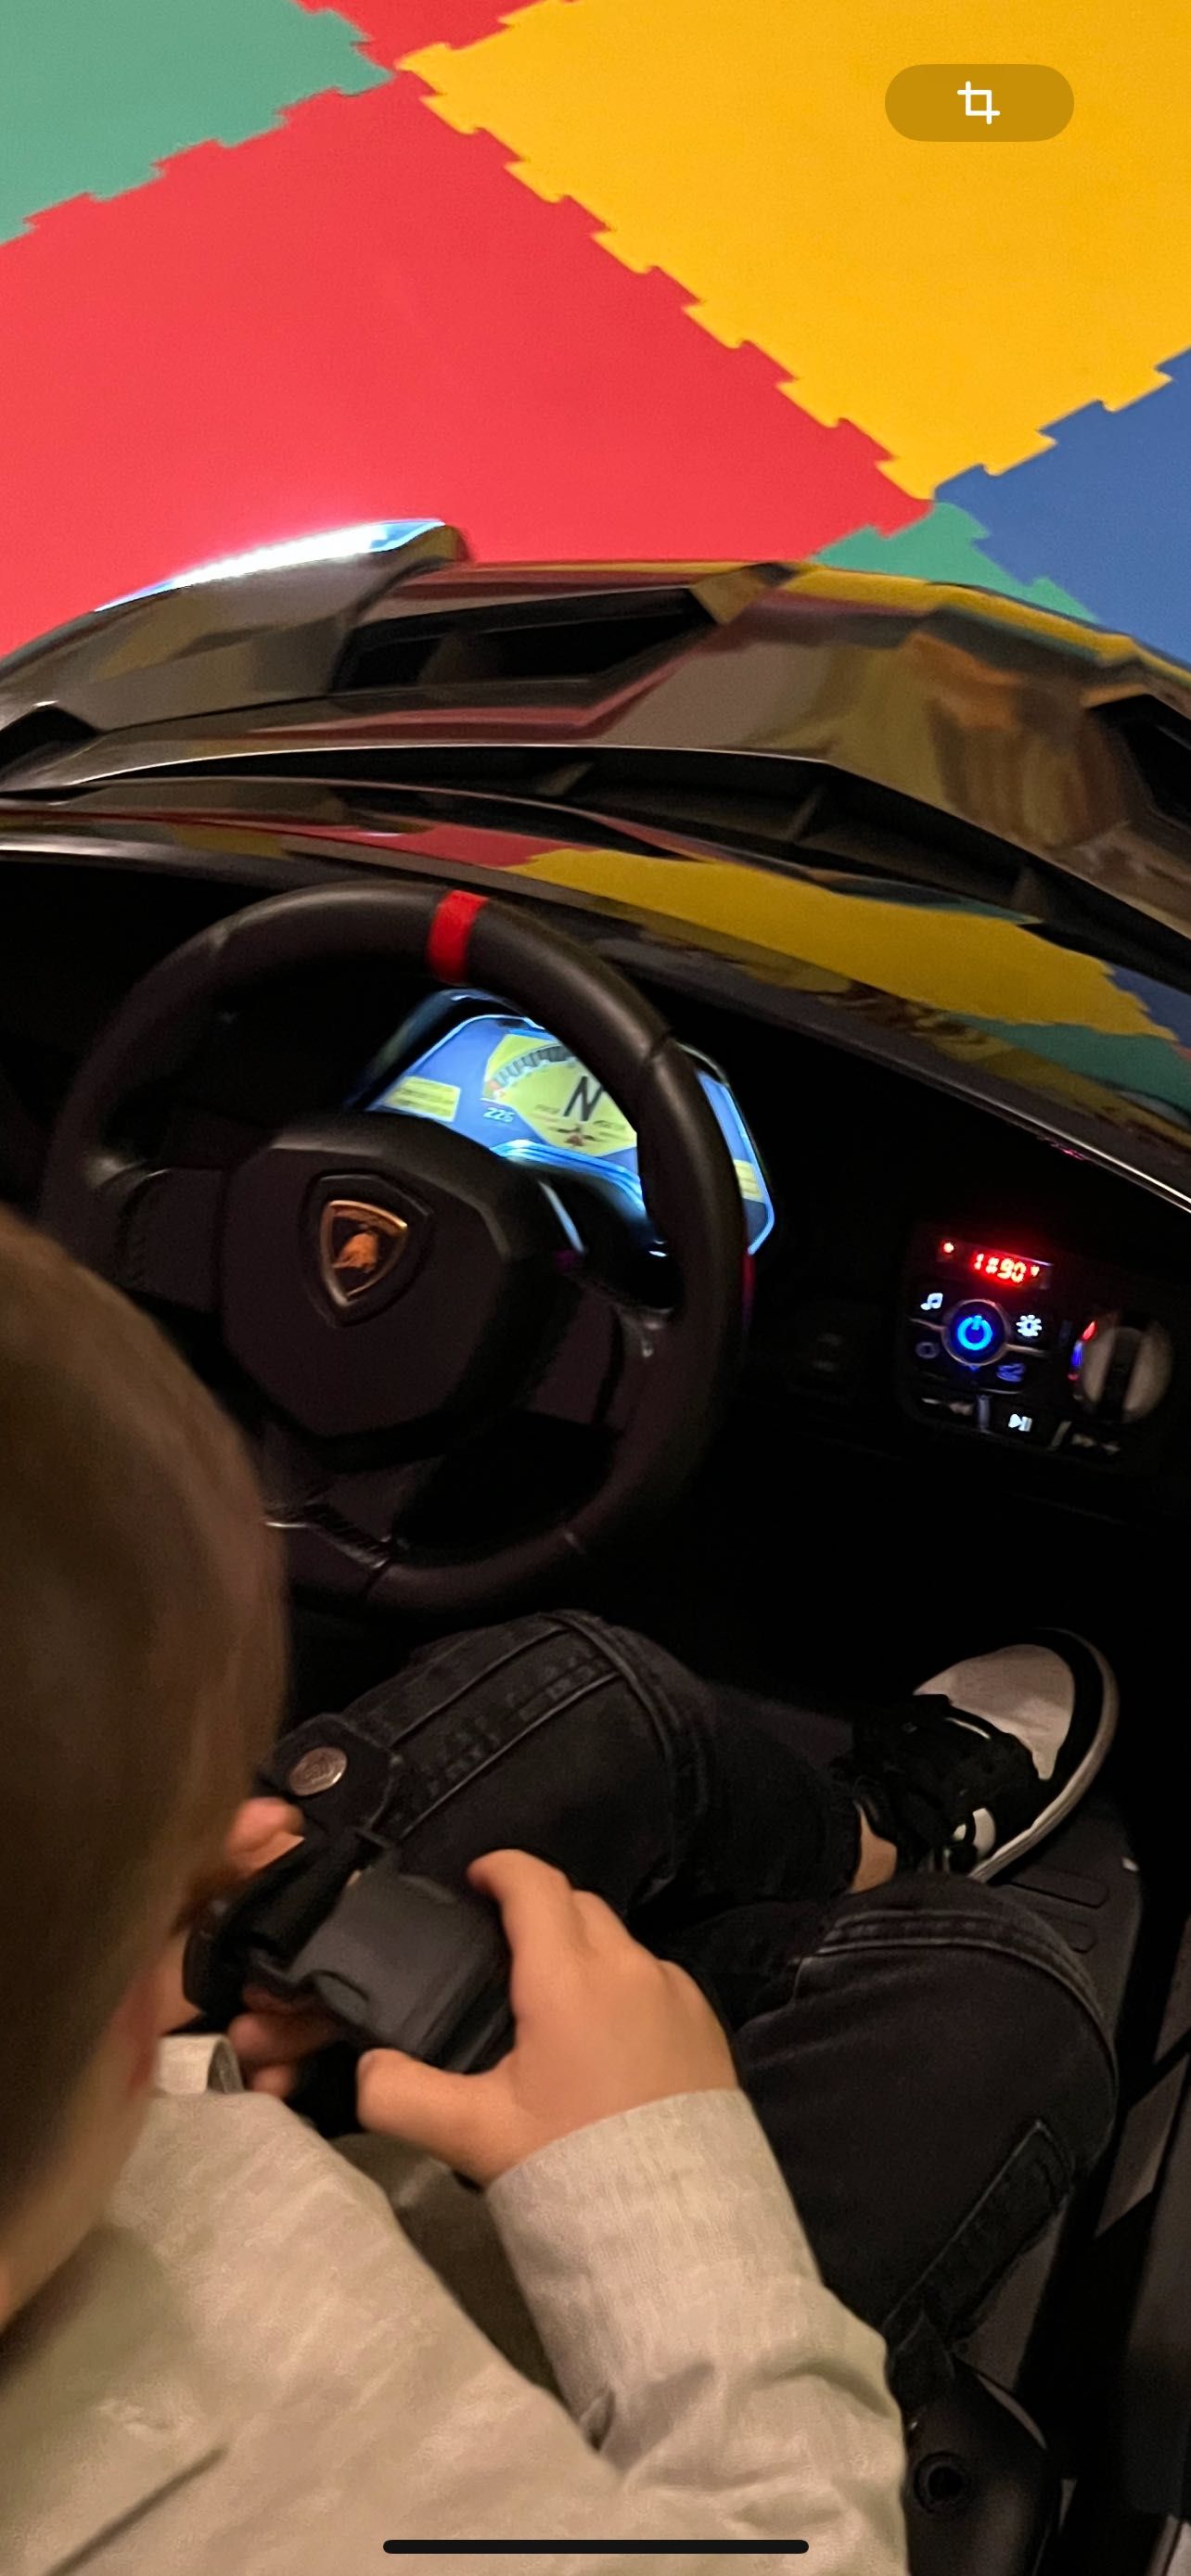 Vând Lamborghini copii, mașină electrica